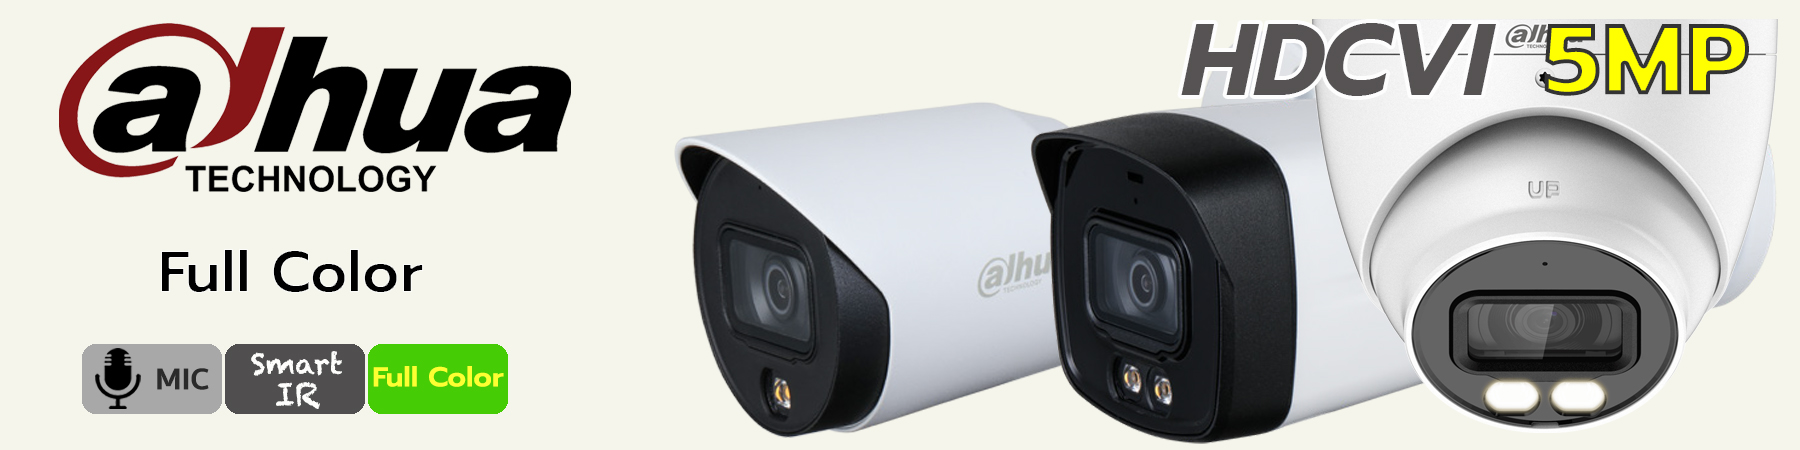 กล้องวงจรปิด Dahua, กล้องวงจรปิด Dahua Dual-Light, Dahua Built-in Mic, Dahua ไมค์บันทึกเสียง, HFW1509TLM-A-LED, HFW1509T-IL-A-LED, HDW1509T-A-LED, HDW1509TLQ-A-LED